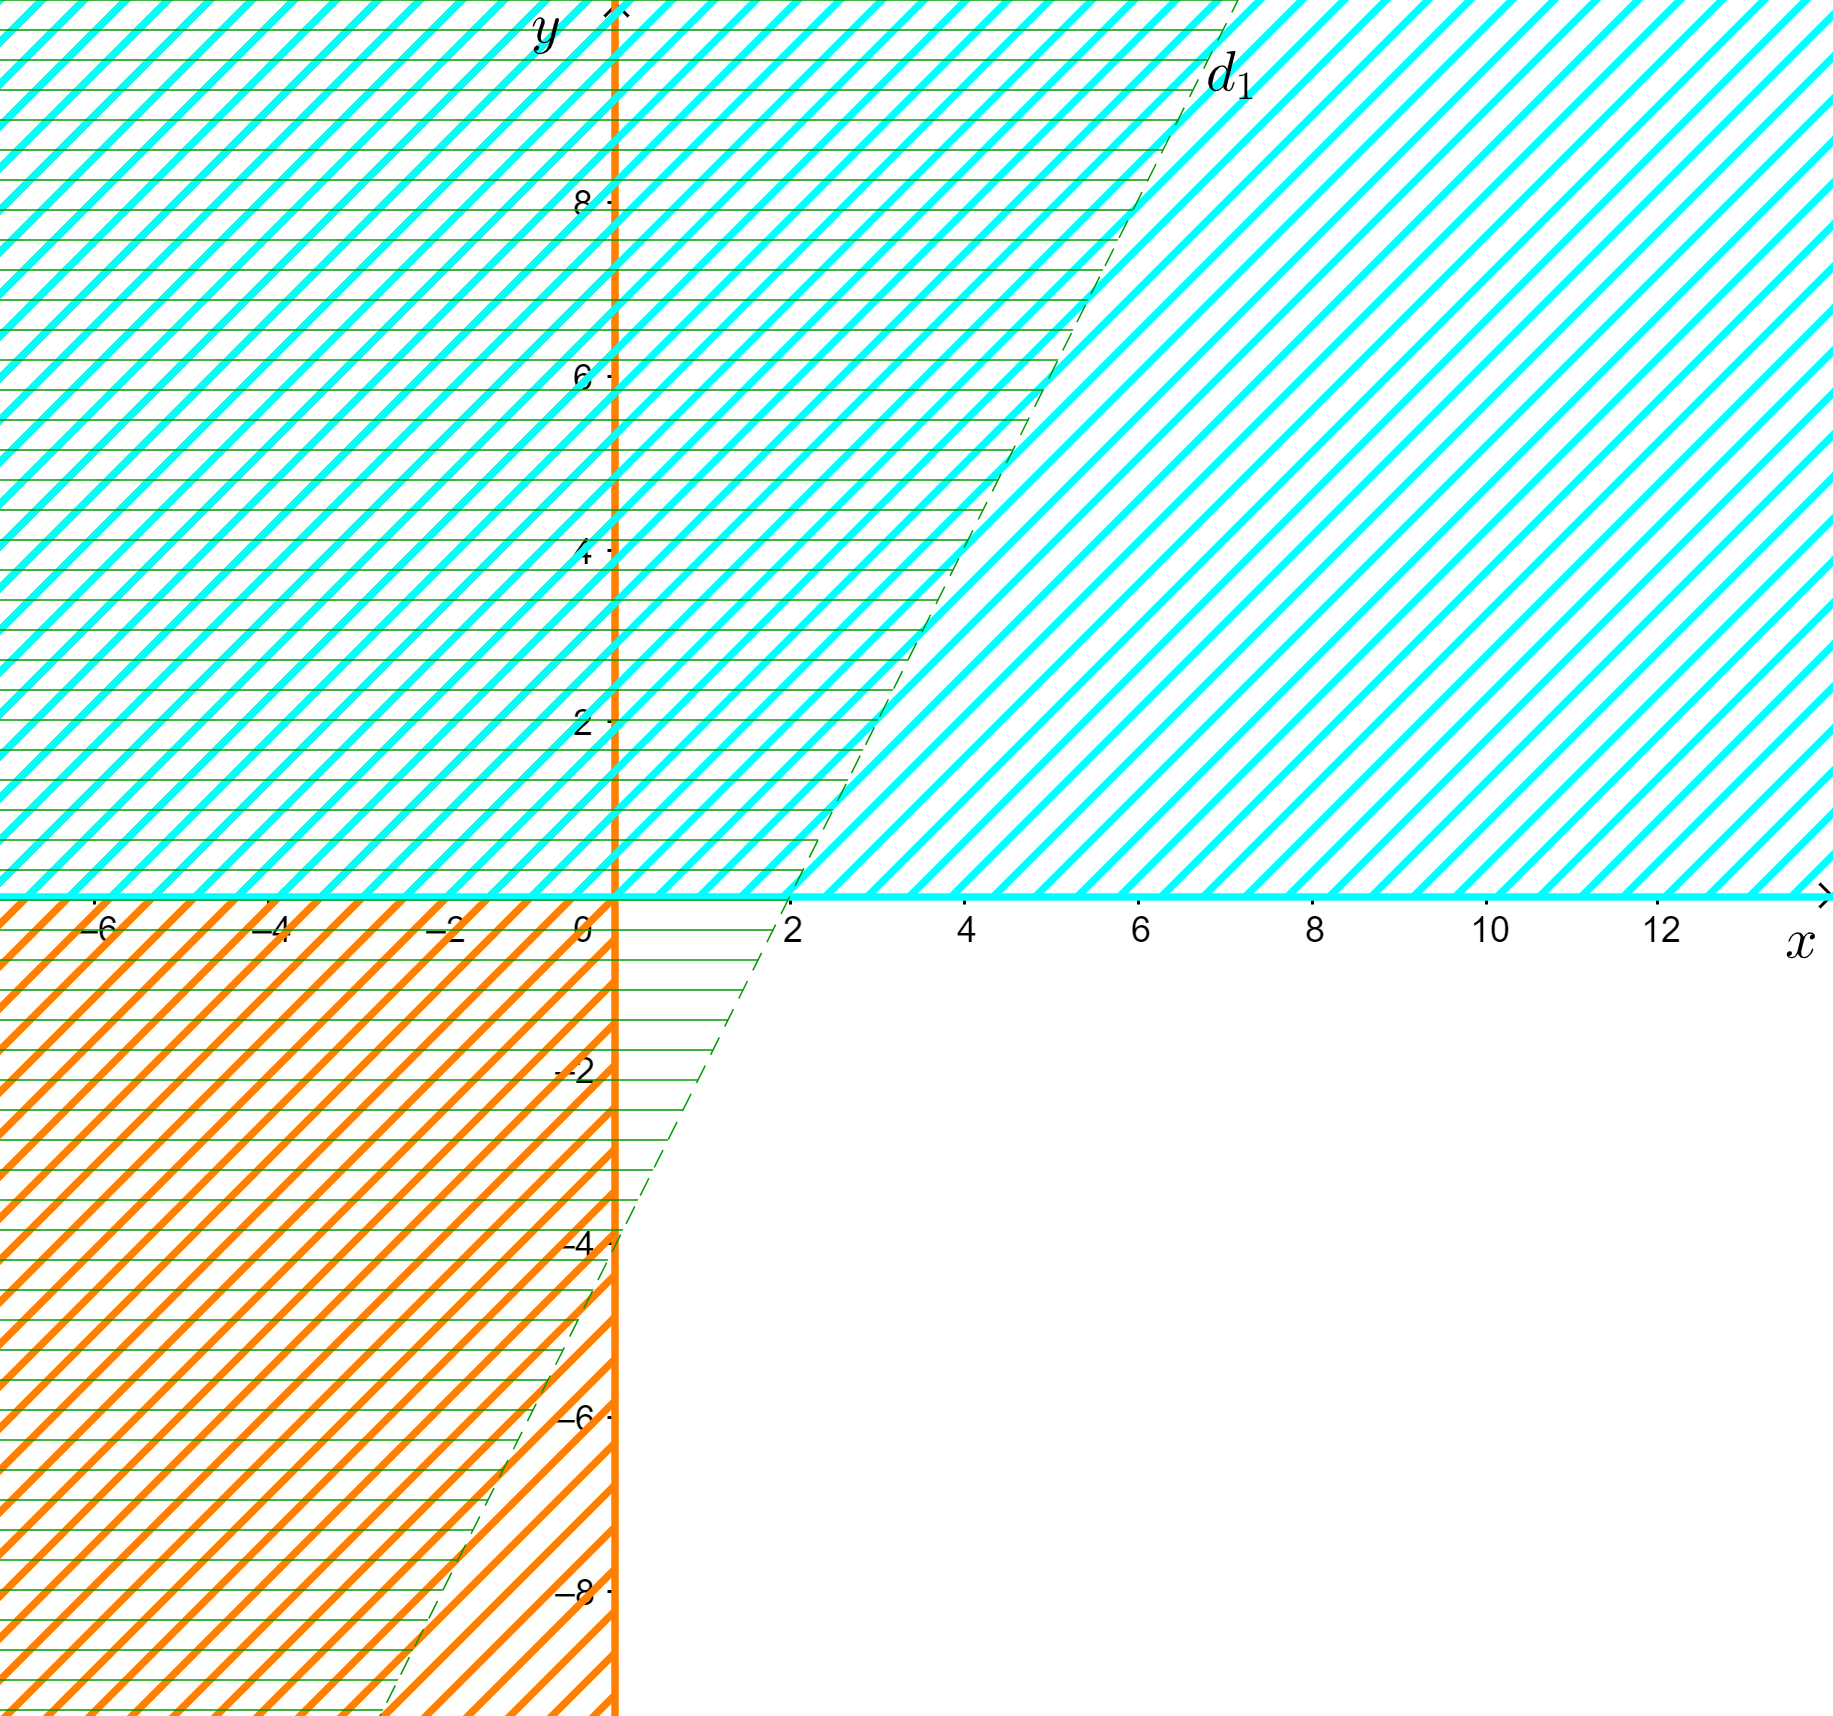 Biểu diễn miền nghiệm của hệ bất phương trình: x+2y<-4 và y≥x+5